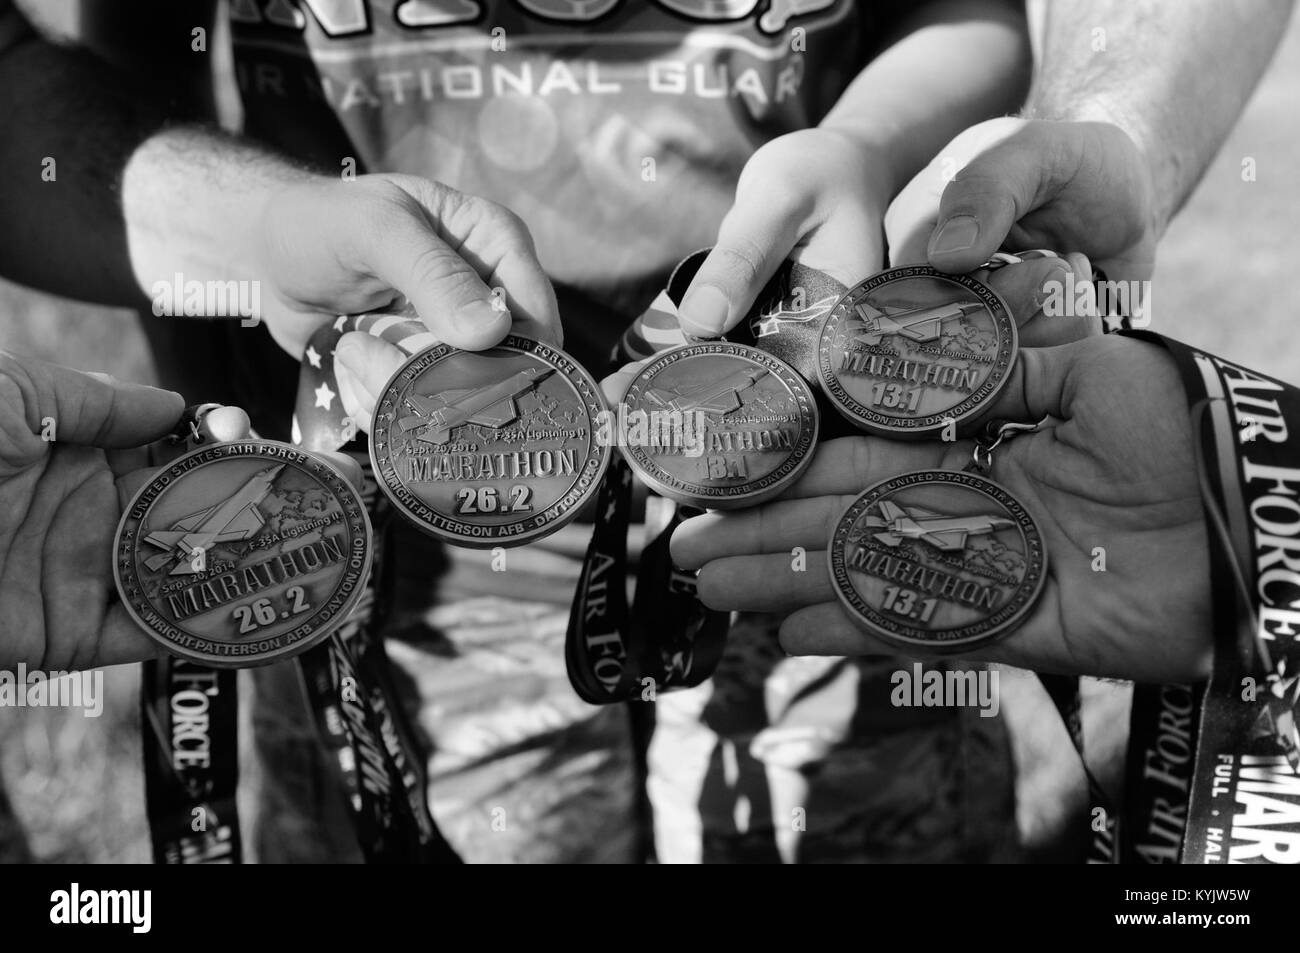 Aviadores de la Guardia Nacional Aérea de Kentucky ganó medallas pantalla ejecutando la Fuerza Aérea plena maratón y medio maratón el 20 de septiembre en Dayton, Ohio. Este es el 18º año en el evento, que se celebra el tercer sábado de septiembre en honor del cumpleaños de la Fuerza Aérea. (Ee.Uu. Foto de la Guardia Nacional Aérea por el Sargento. Vicky Spesard) Foto de stock